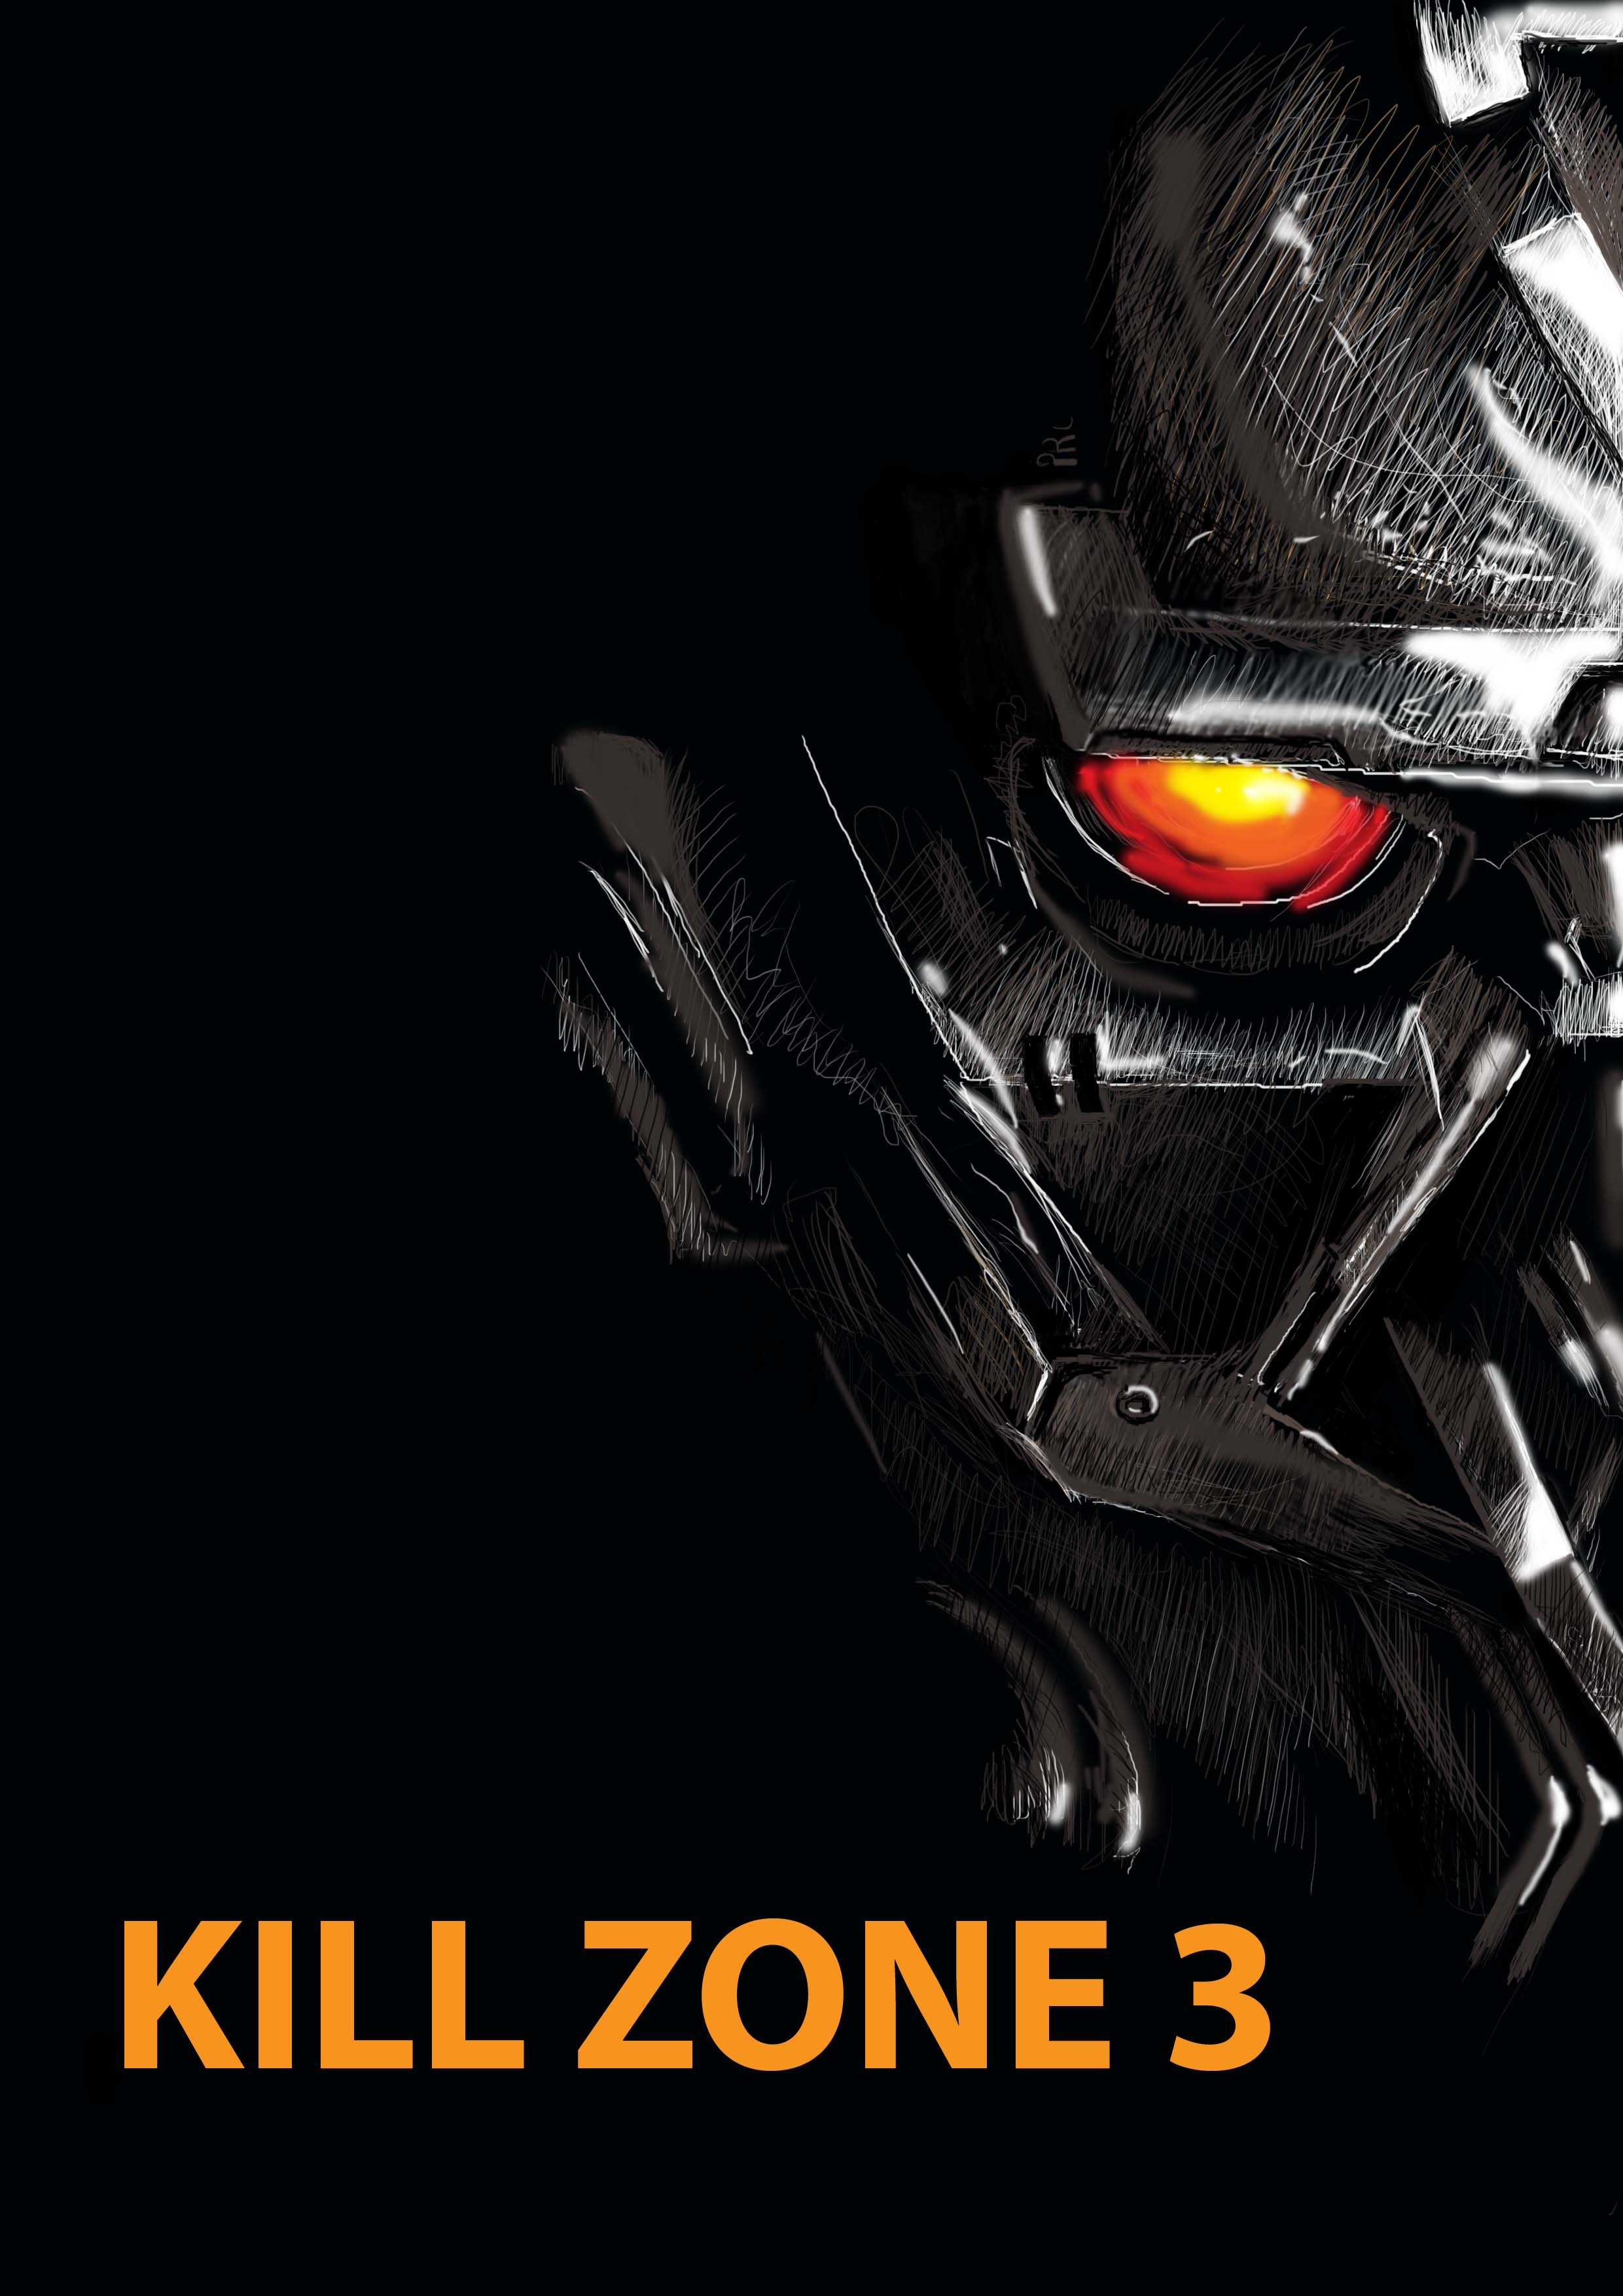 Kill zone 3 by ppleong